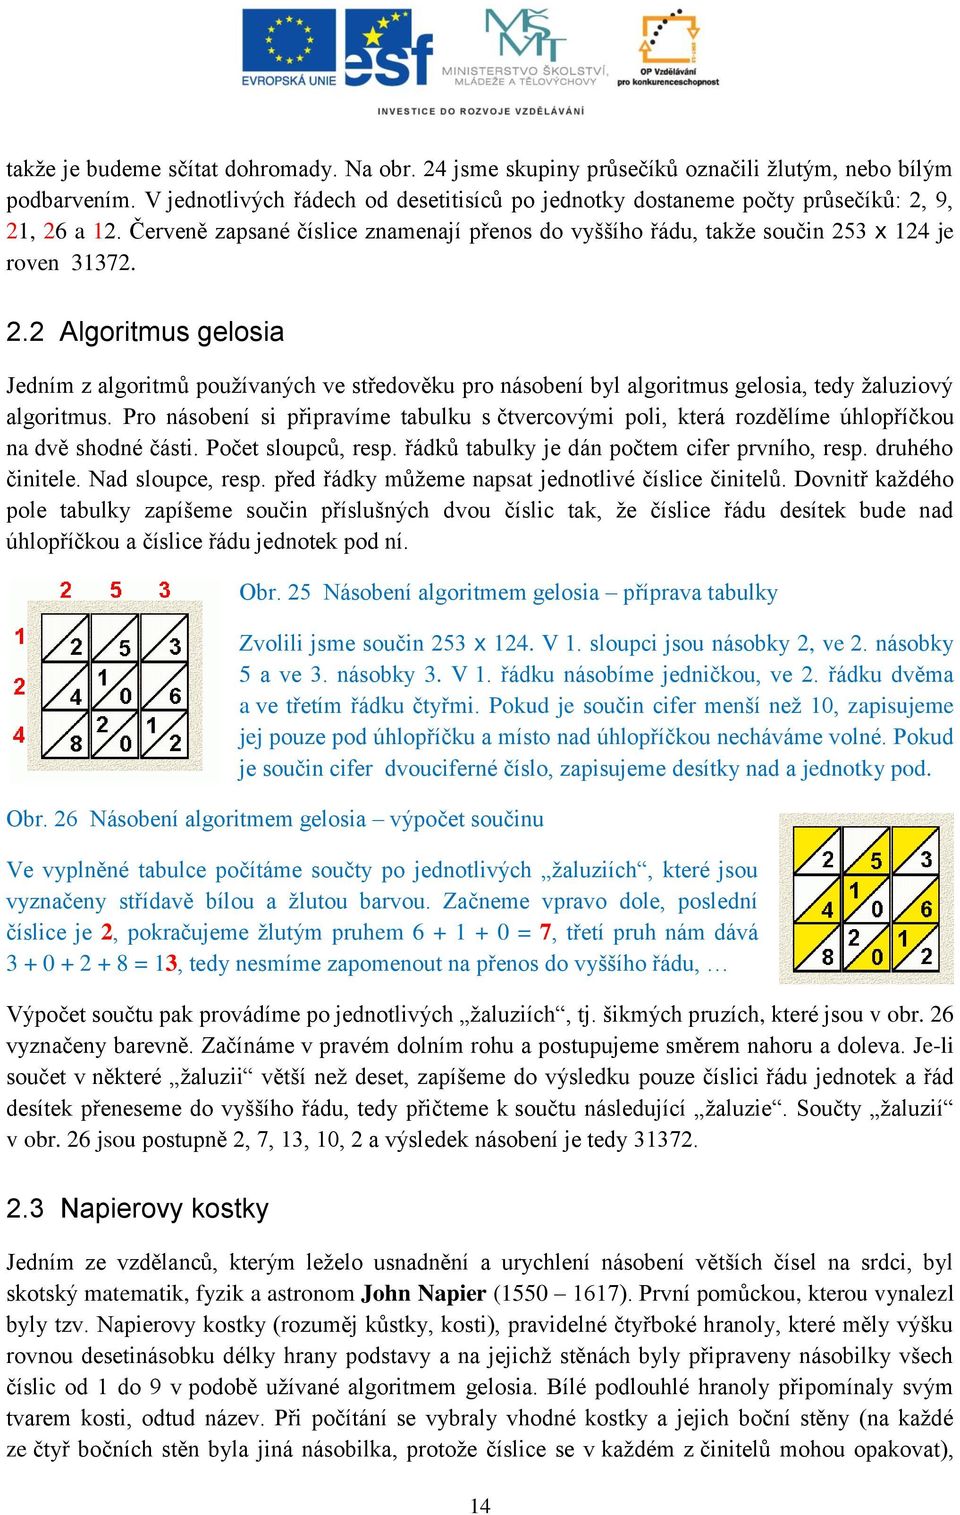 9, 21, 26 a 12. Červeně zapsané číslice znamenají přenos do vyššího řádu, takže součin 253 x 124 je roven 31372. 2.2 Algoritmus gelosia Jedním z algoritmů používaných ve středověku pro násobení byl algoritmus gelosia, tedy žaluziový algoritmus.